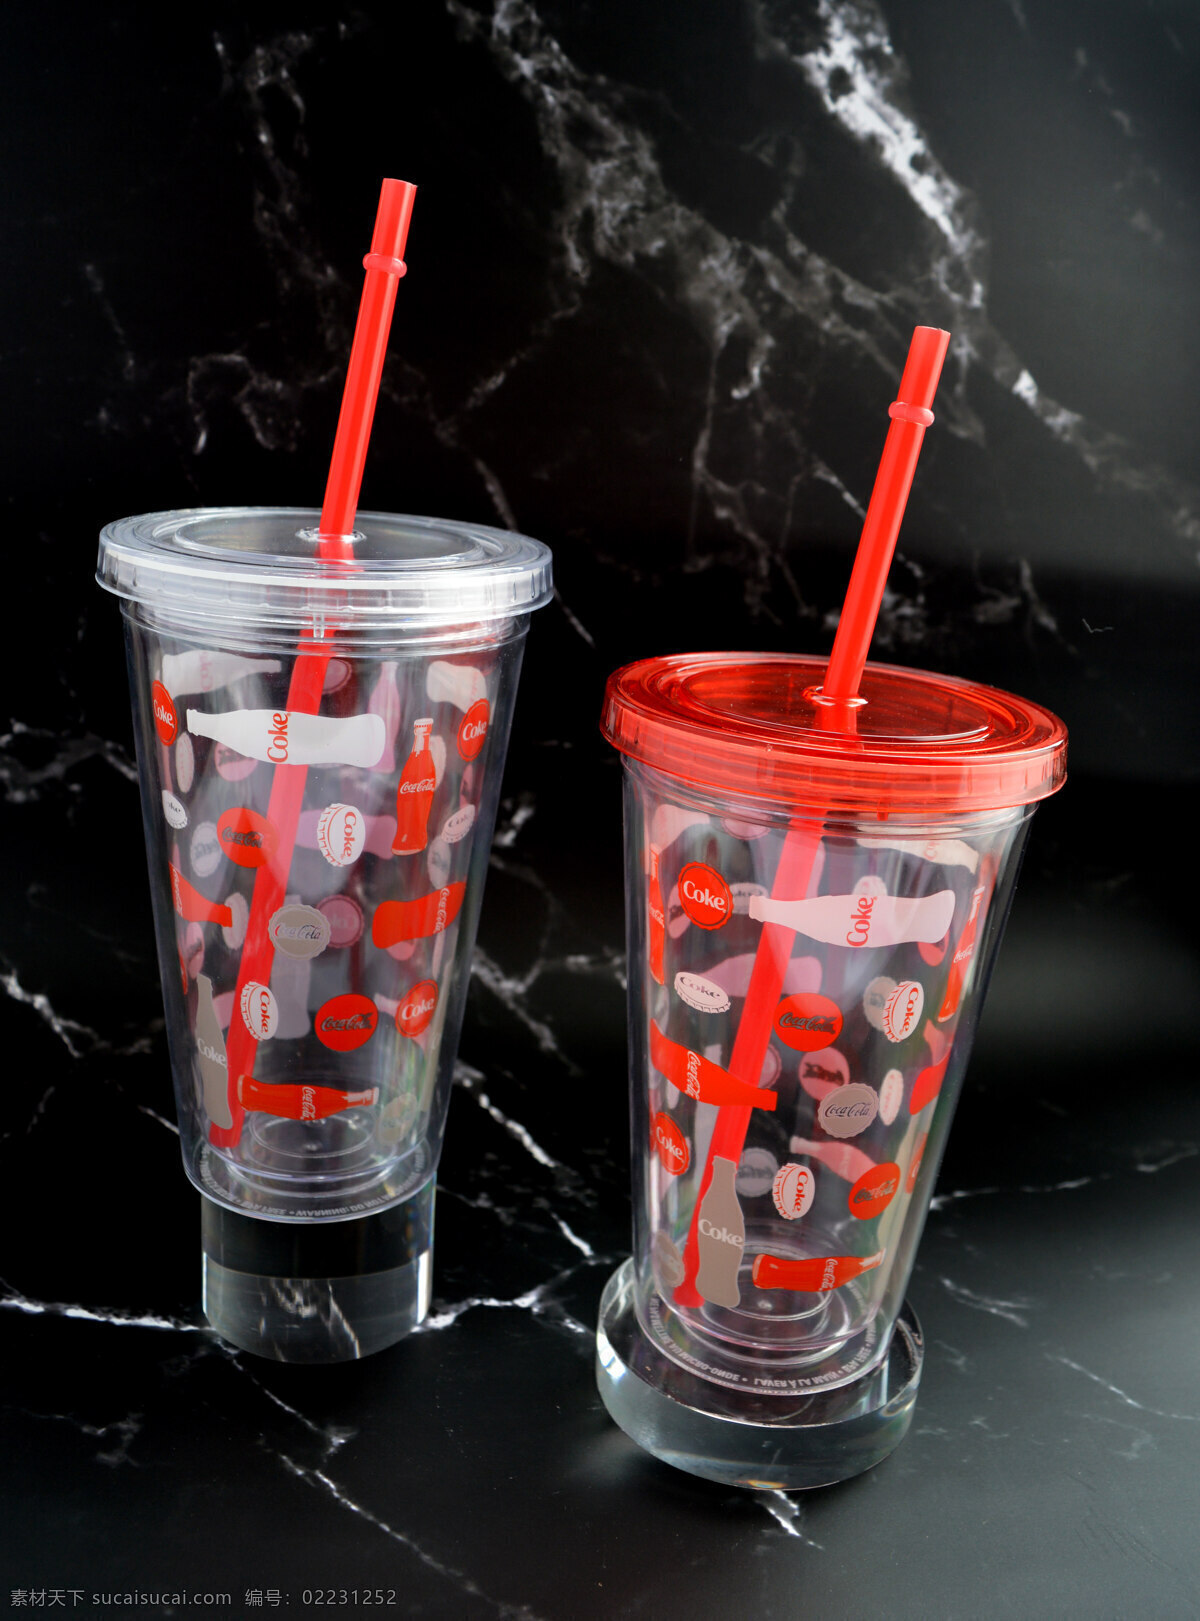 可乐 双层 吸管杯 吸管 塑料杯 透明杯 被盖 生活百科 生活素材